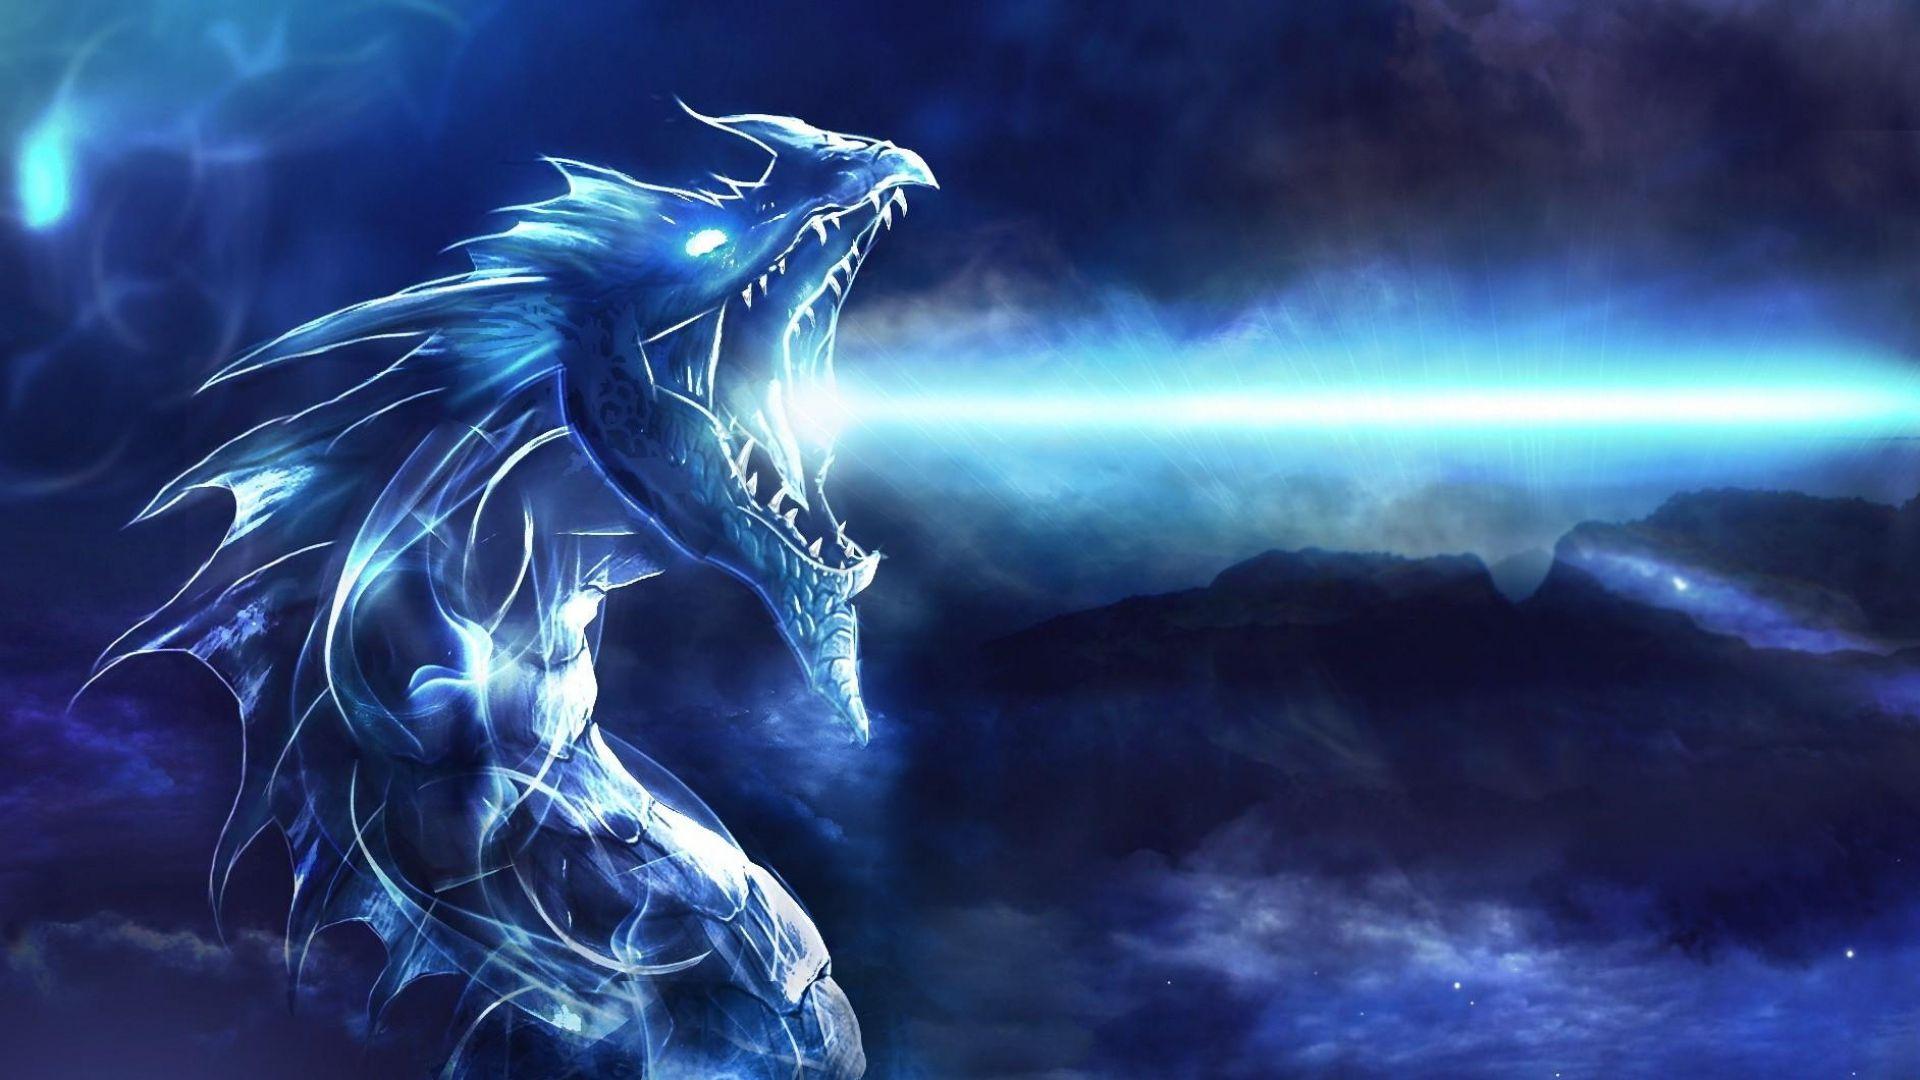 blue dragon wallpaper HD. I Luv Dragons. Blue dragon